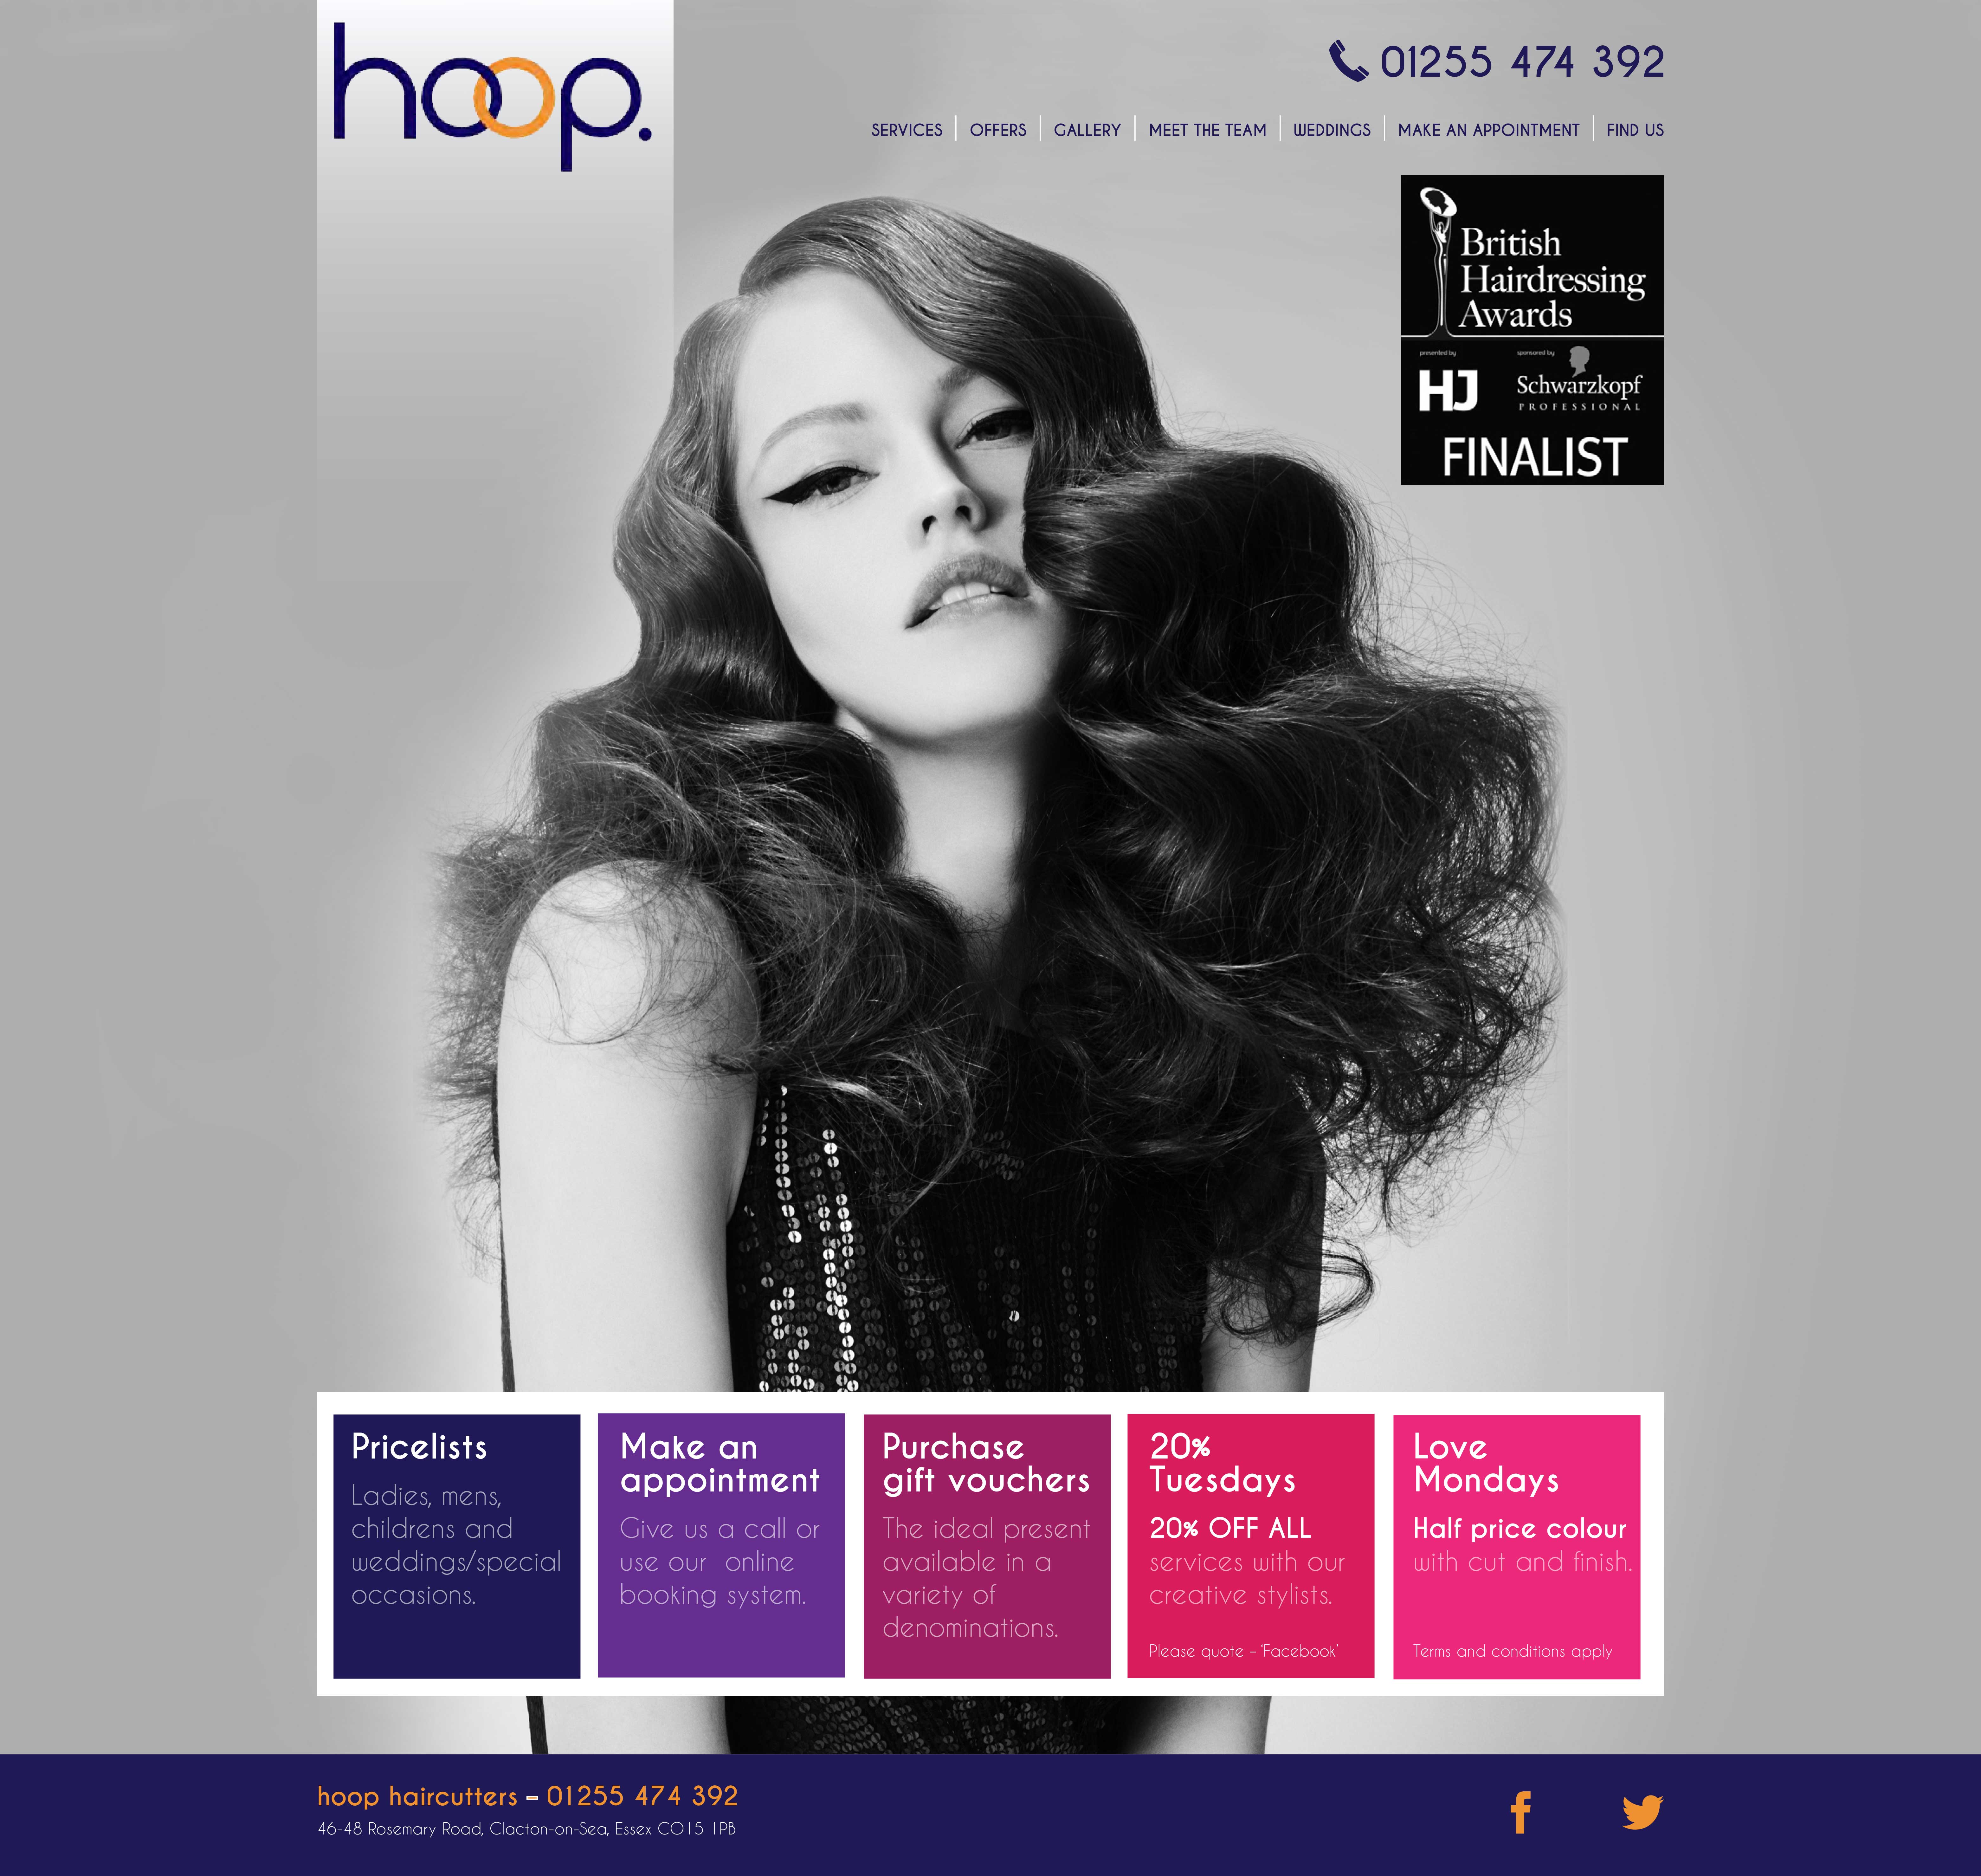 BD00000-Hoop-Hairdressers-Web-1